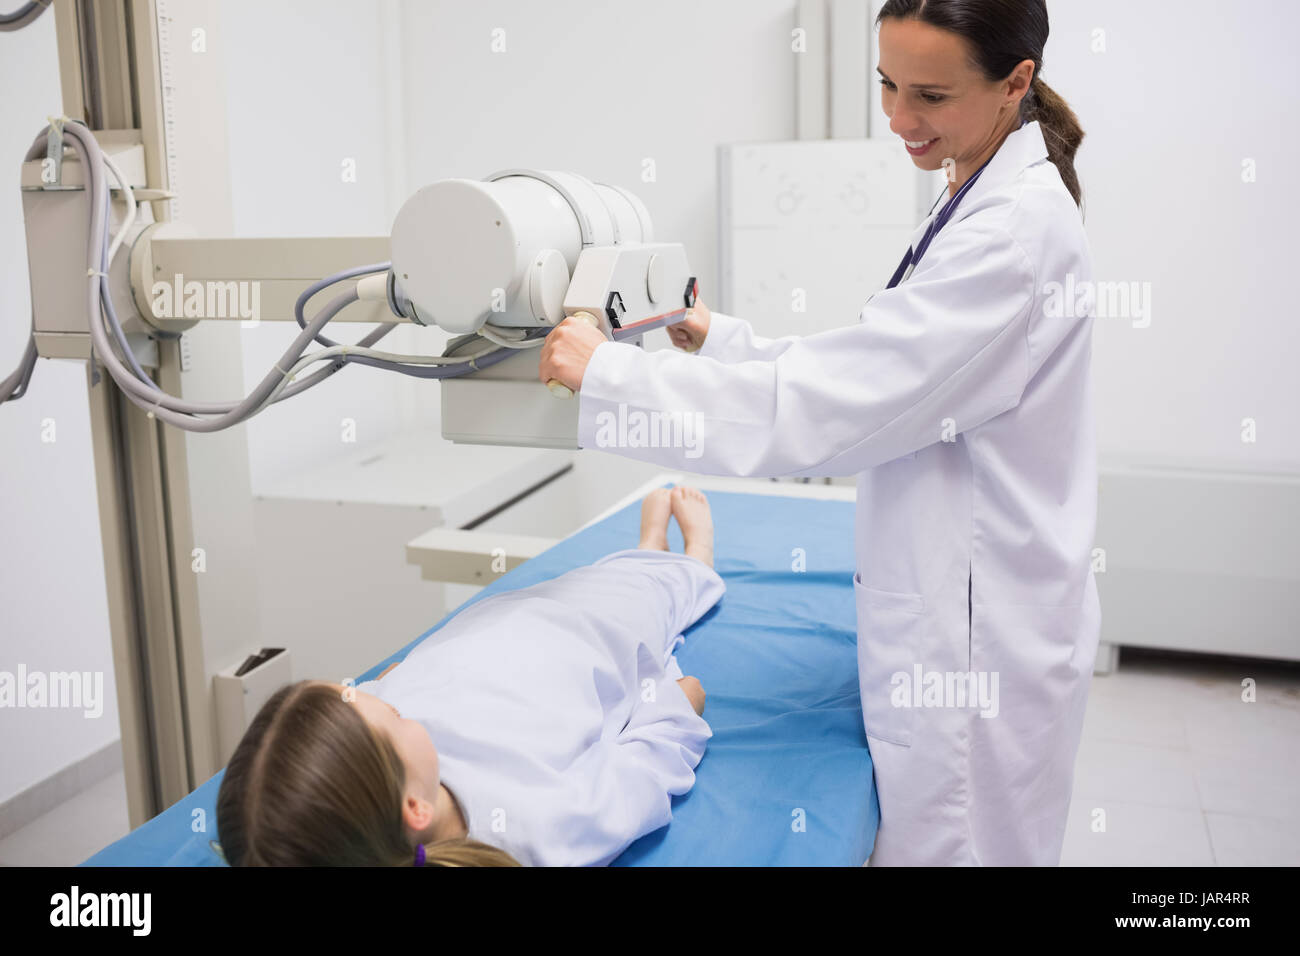 Female doctor holding a radiography la machine sur un patient dans un hôpital Banque D'Images